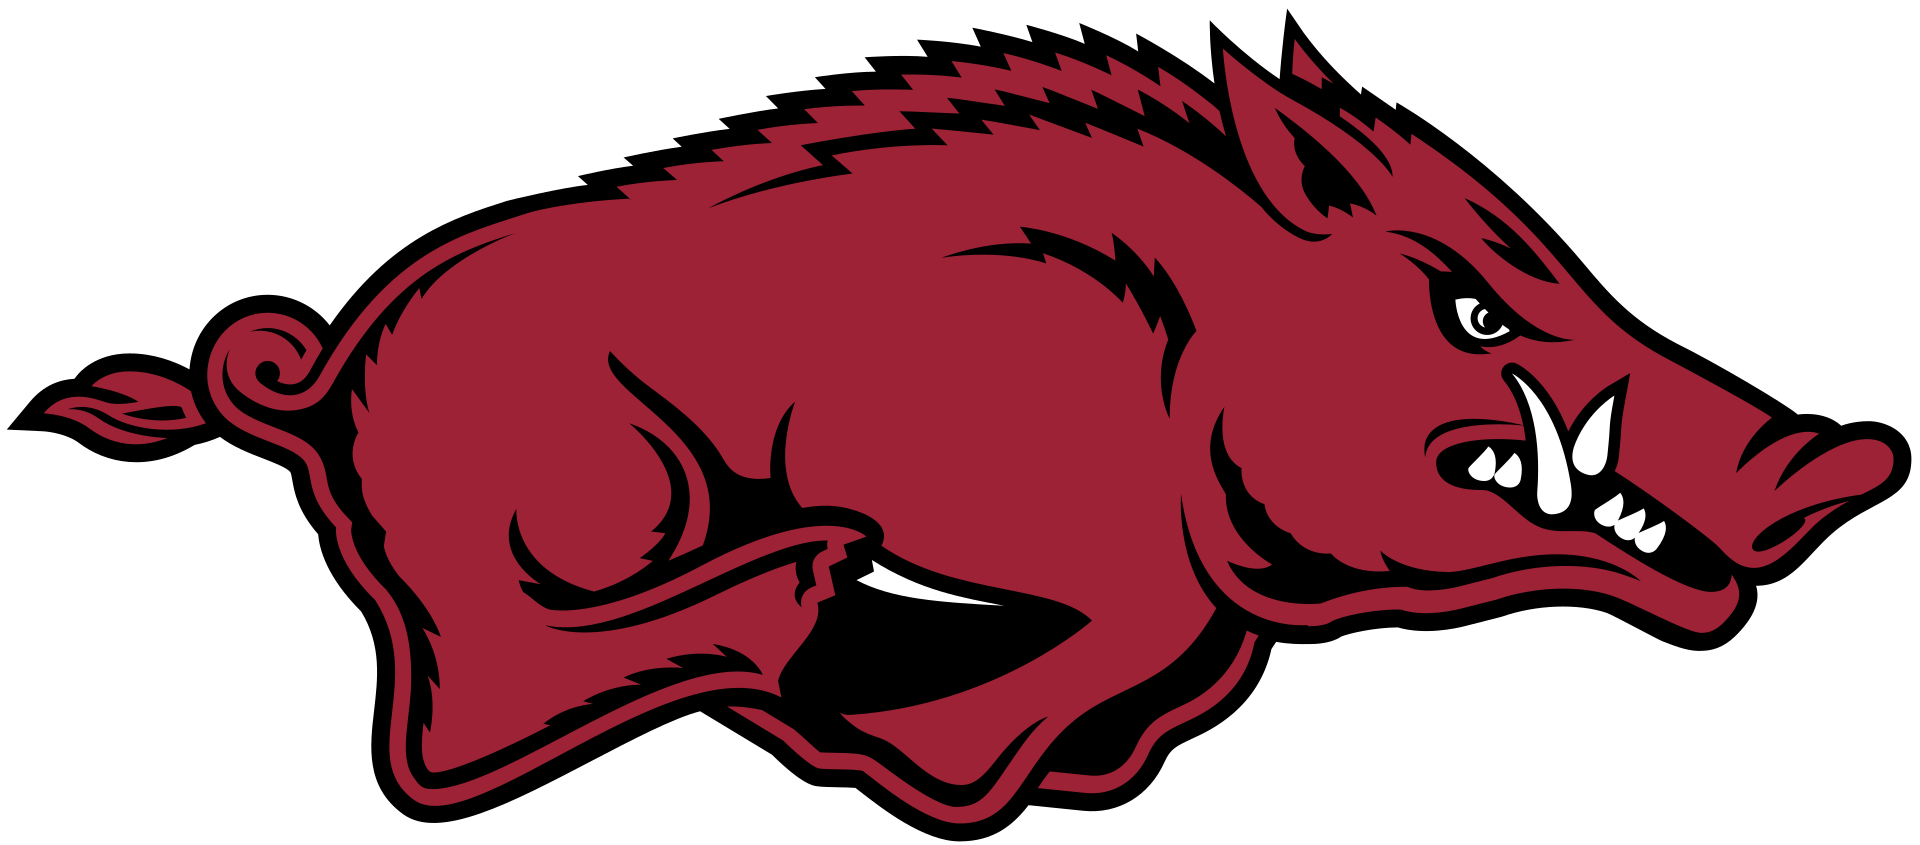 Arkansas Razorbacks logo.svg